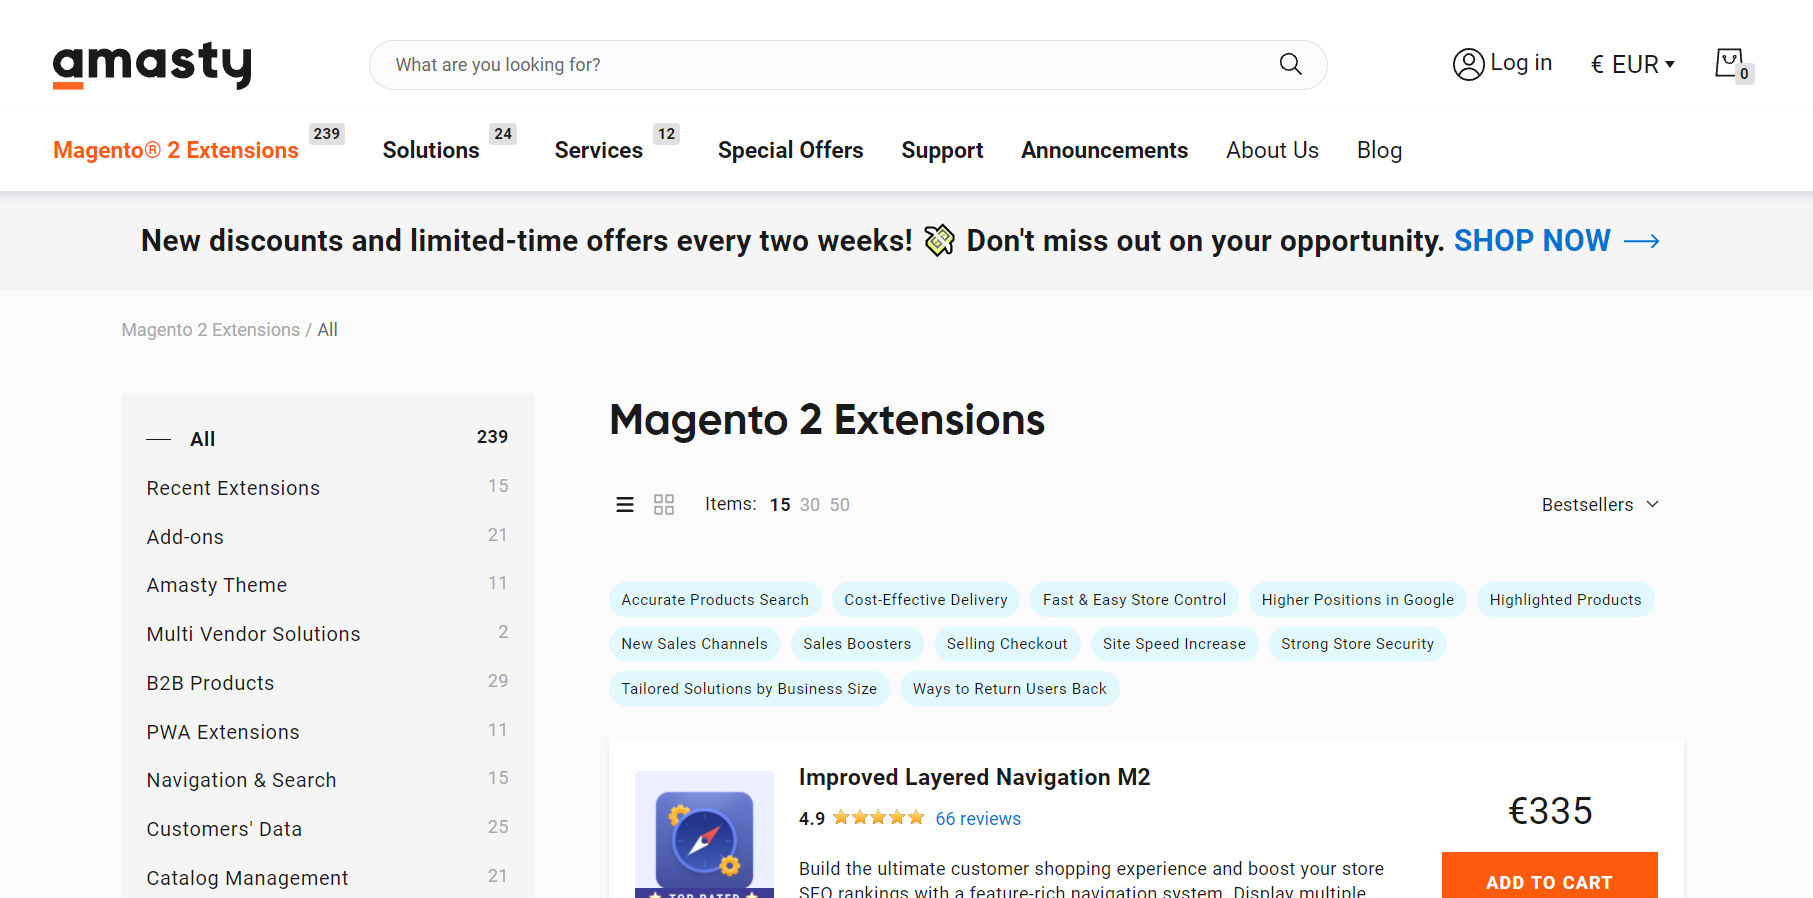  Magento extension provider Website 